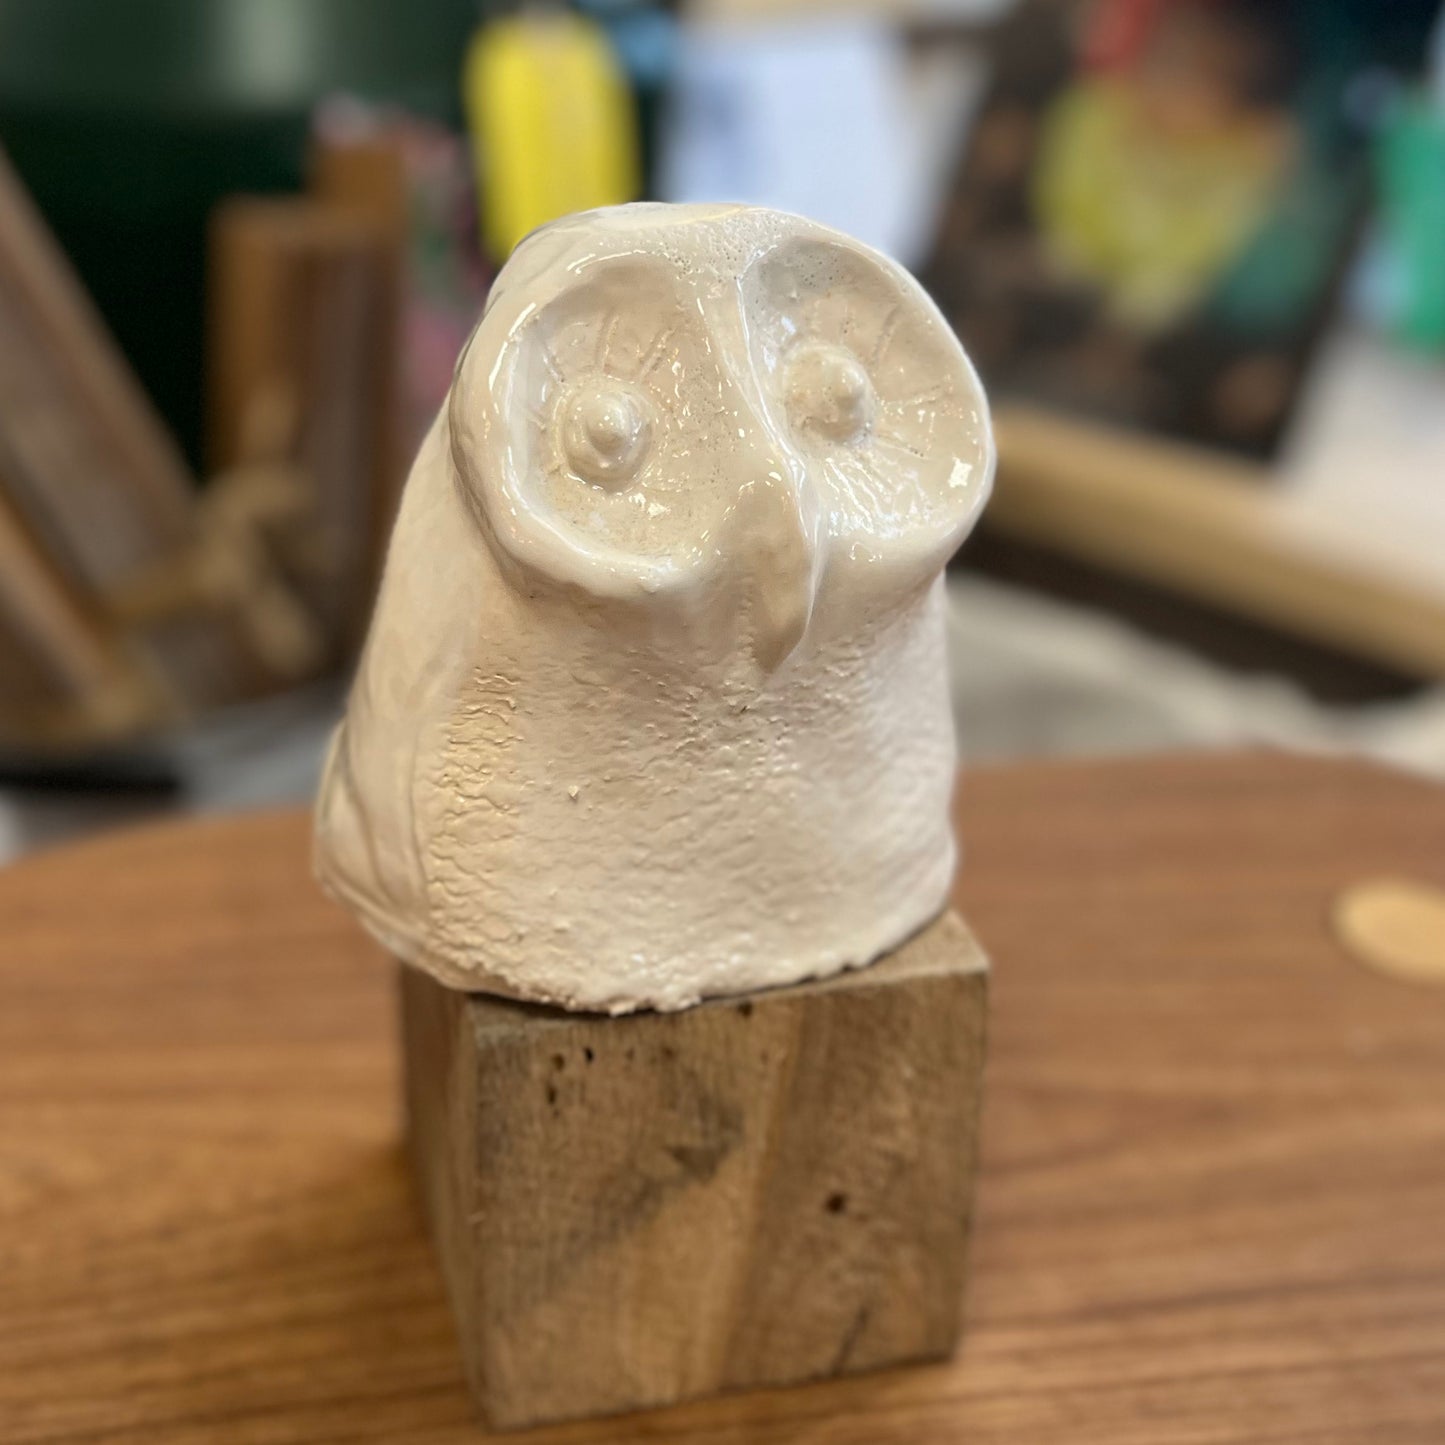 Ceramic Owl Figure